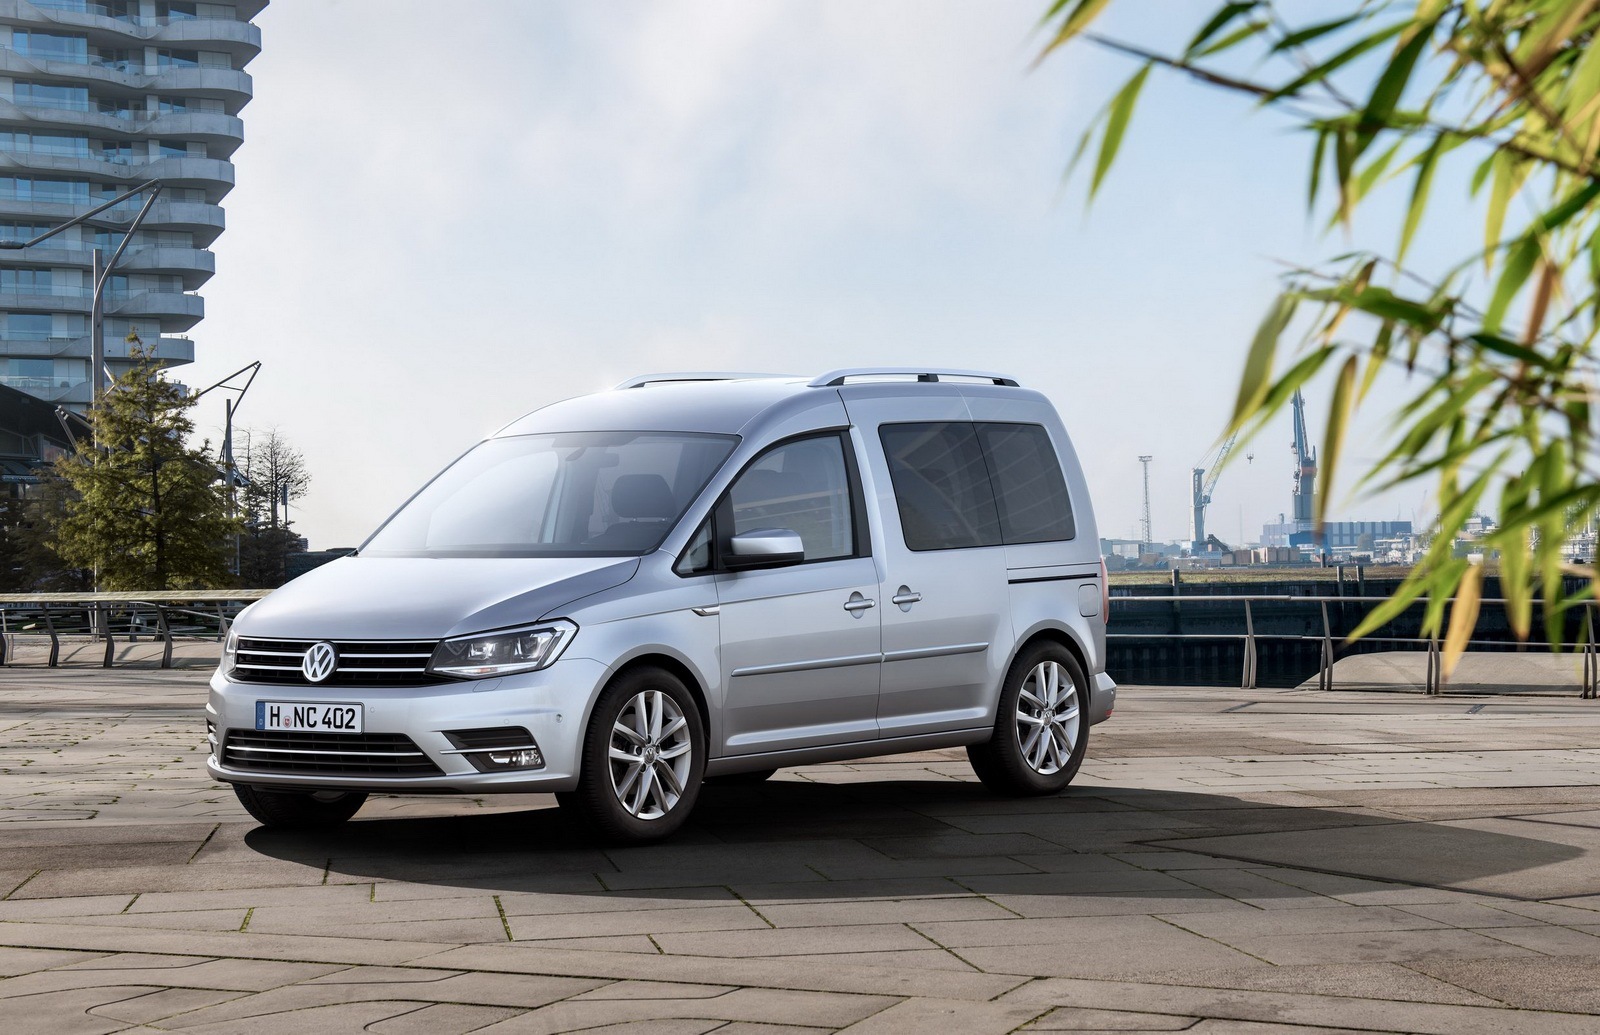 Volkswagen Caddy 2015 precios, motores, equipamientos